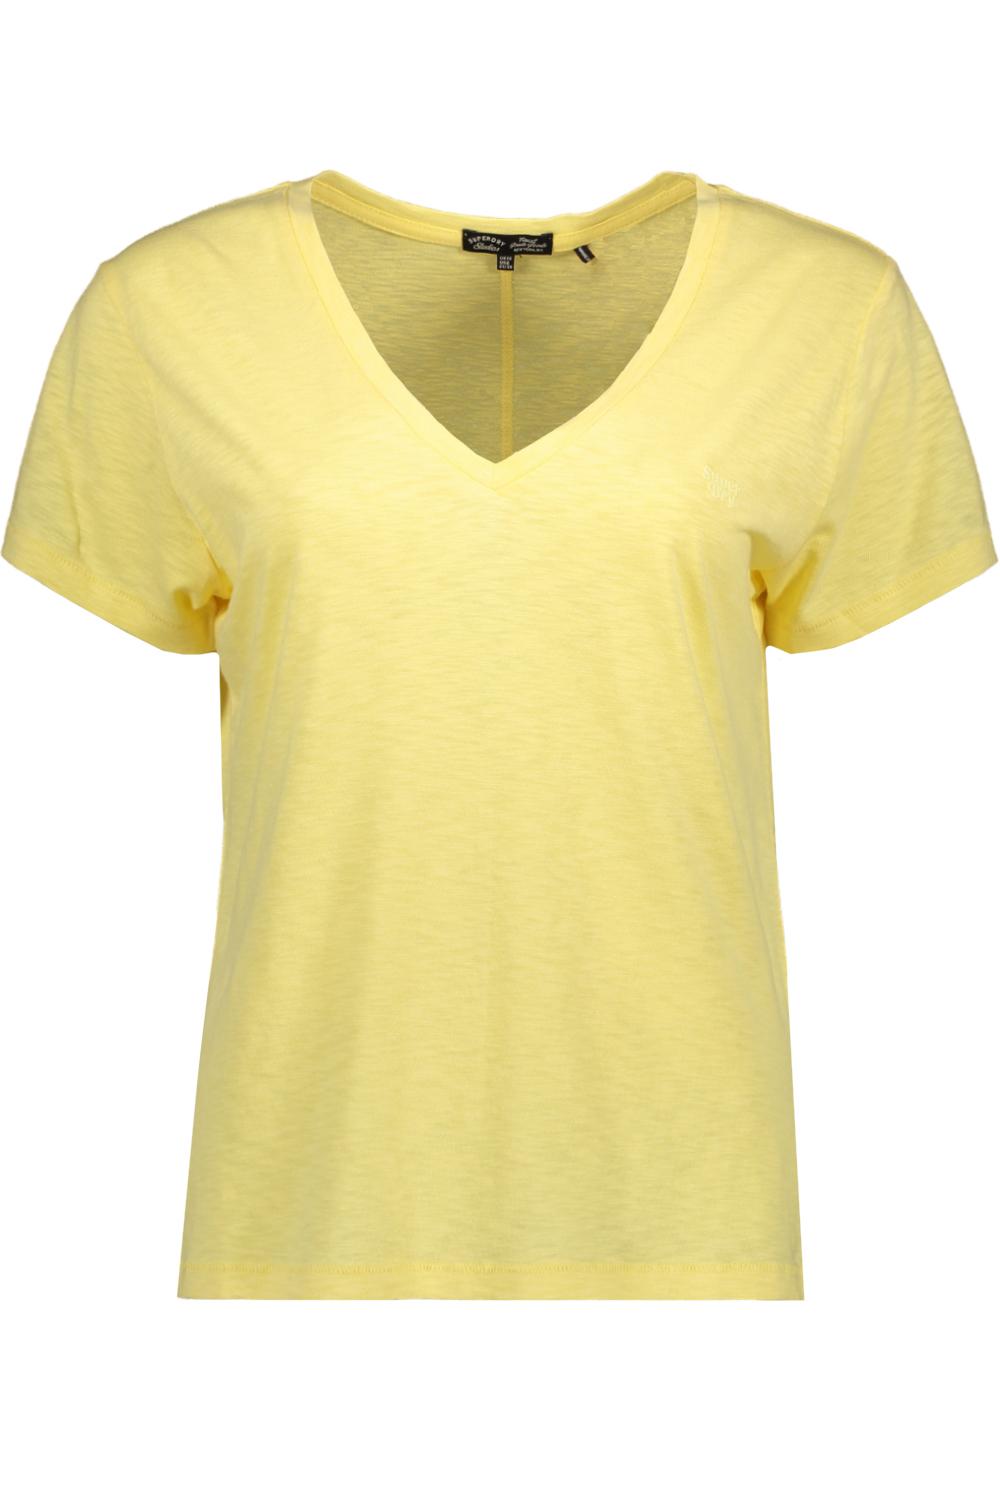 studios slub emb vee superdry tee qlc t-shirt yellow pale w1011181a